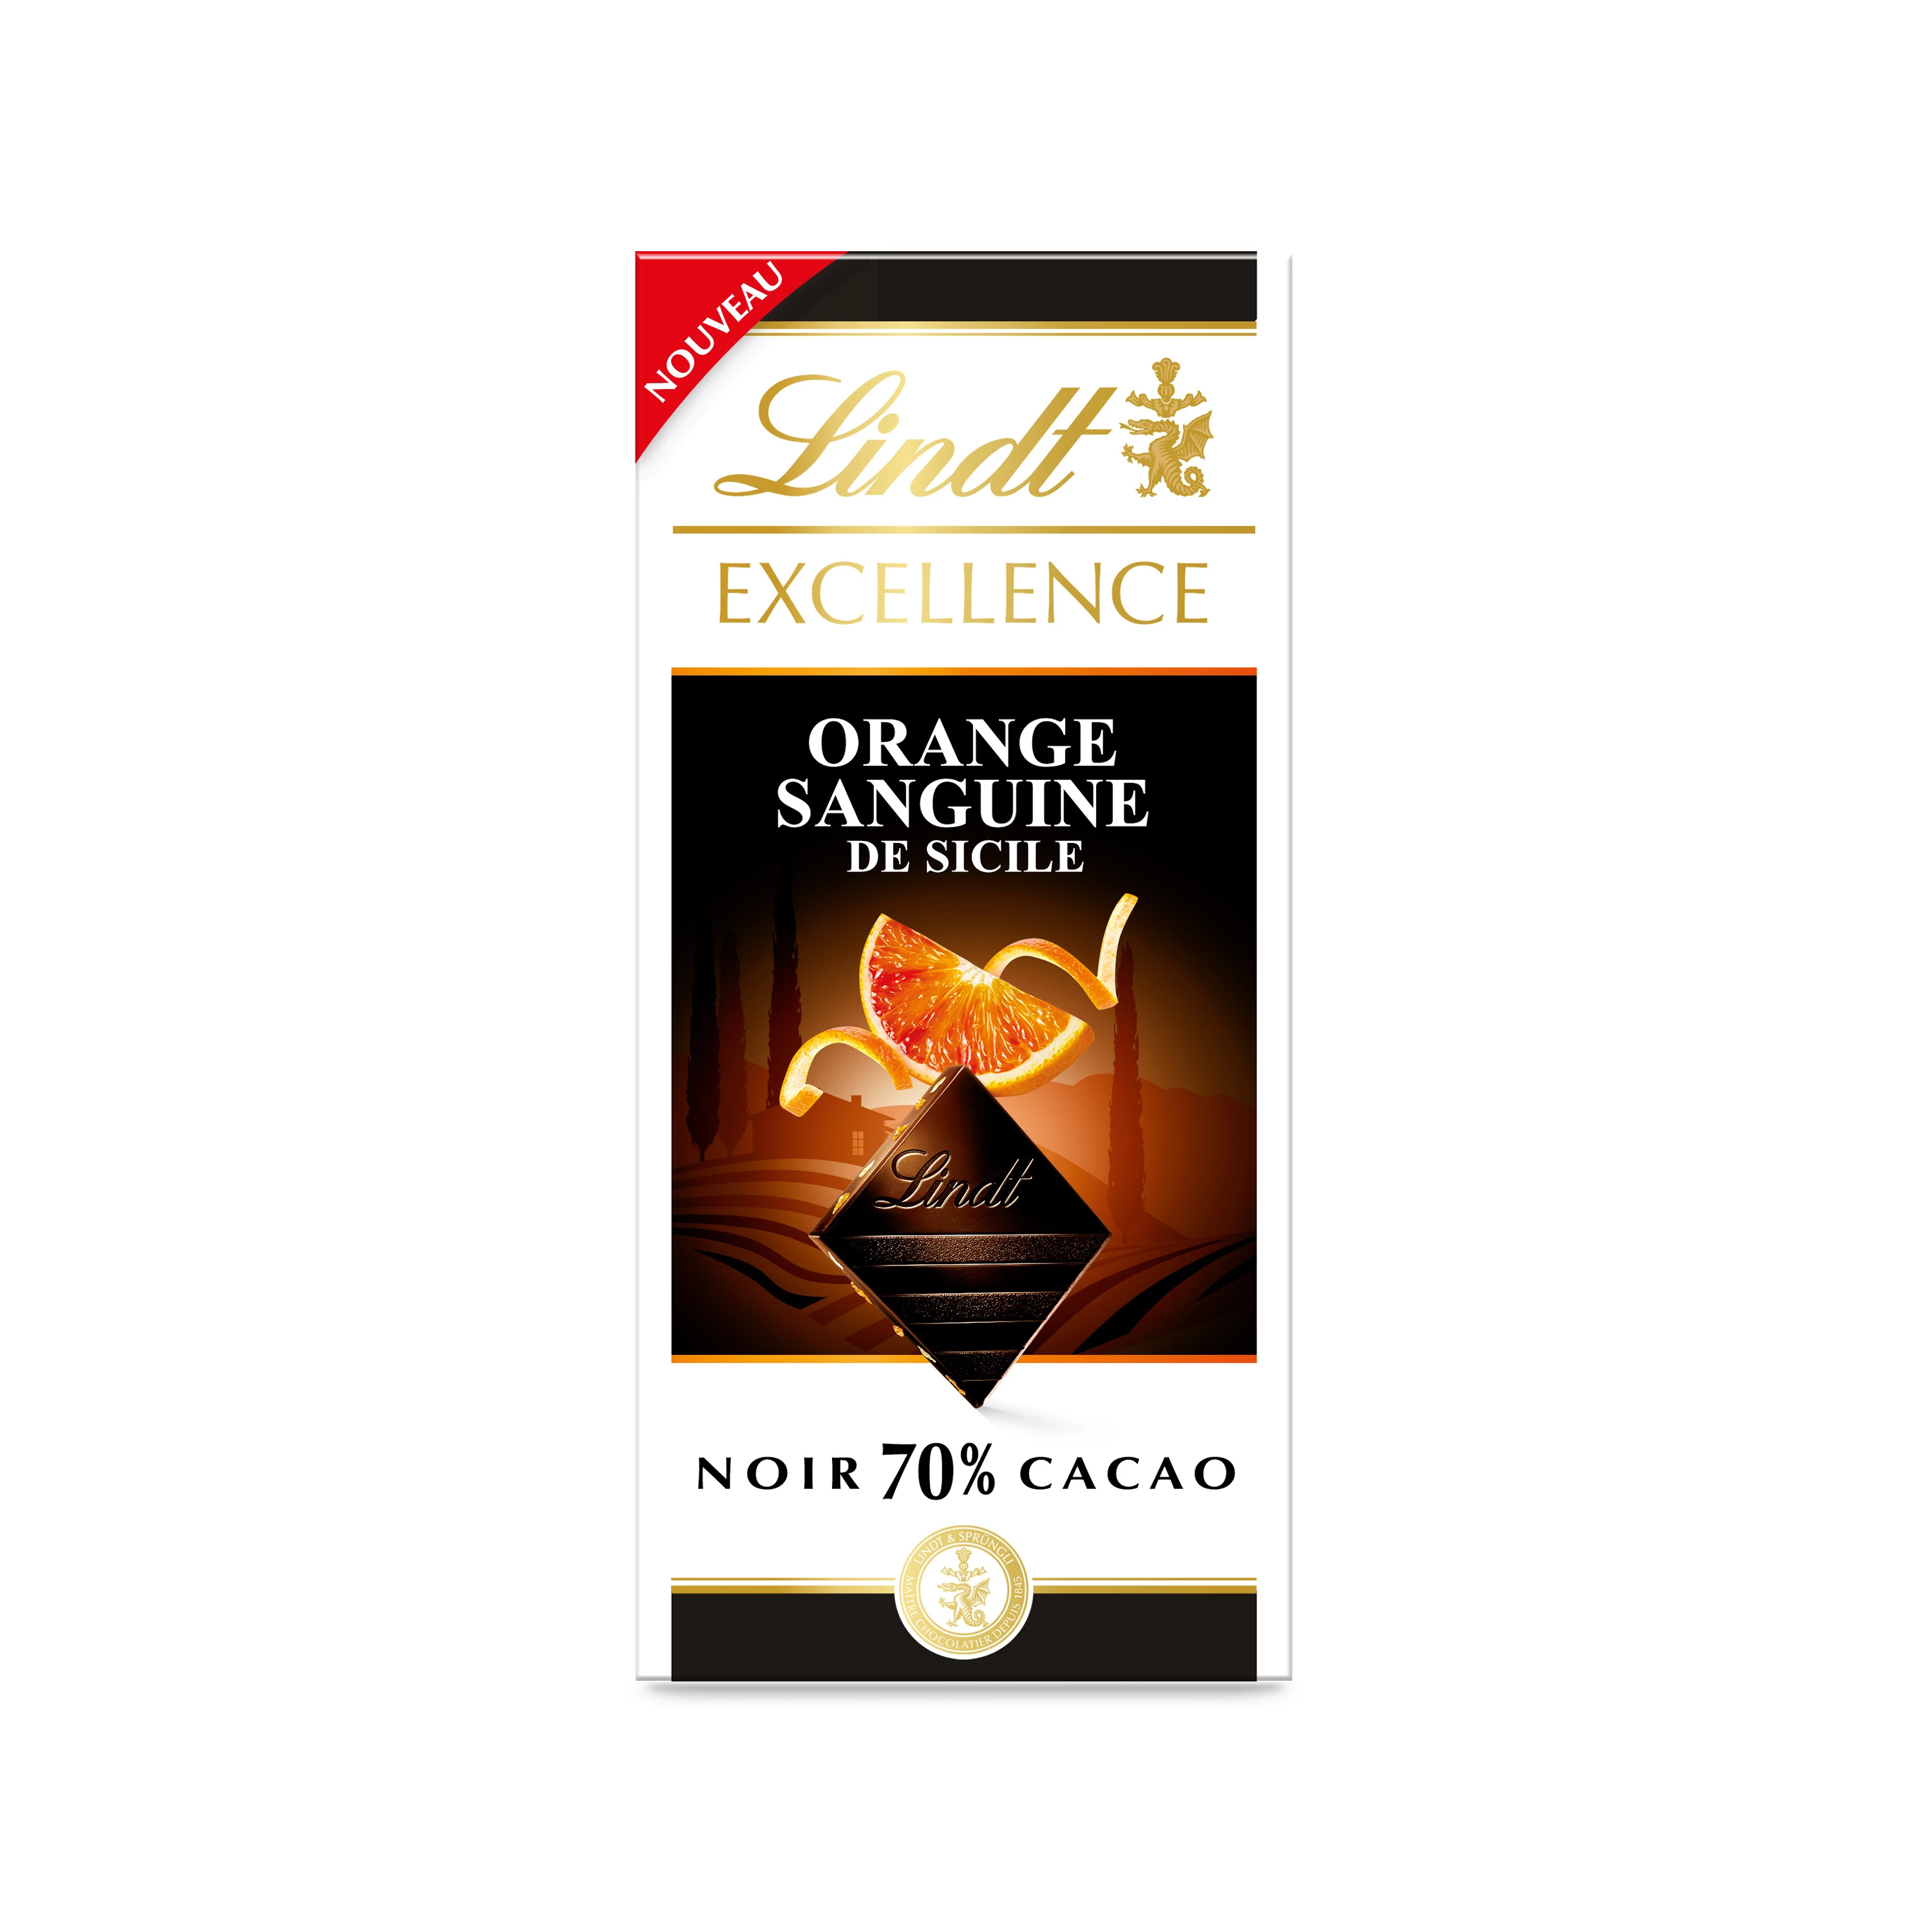 Excellence Noir 70% какао, красный апельсин с Сицилии, таблетки 100 г - LINDT